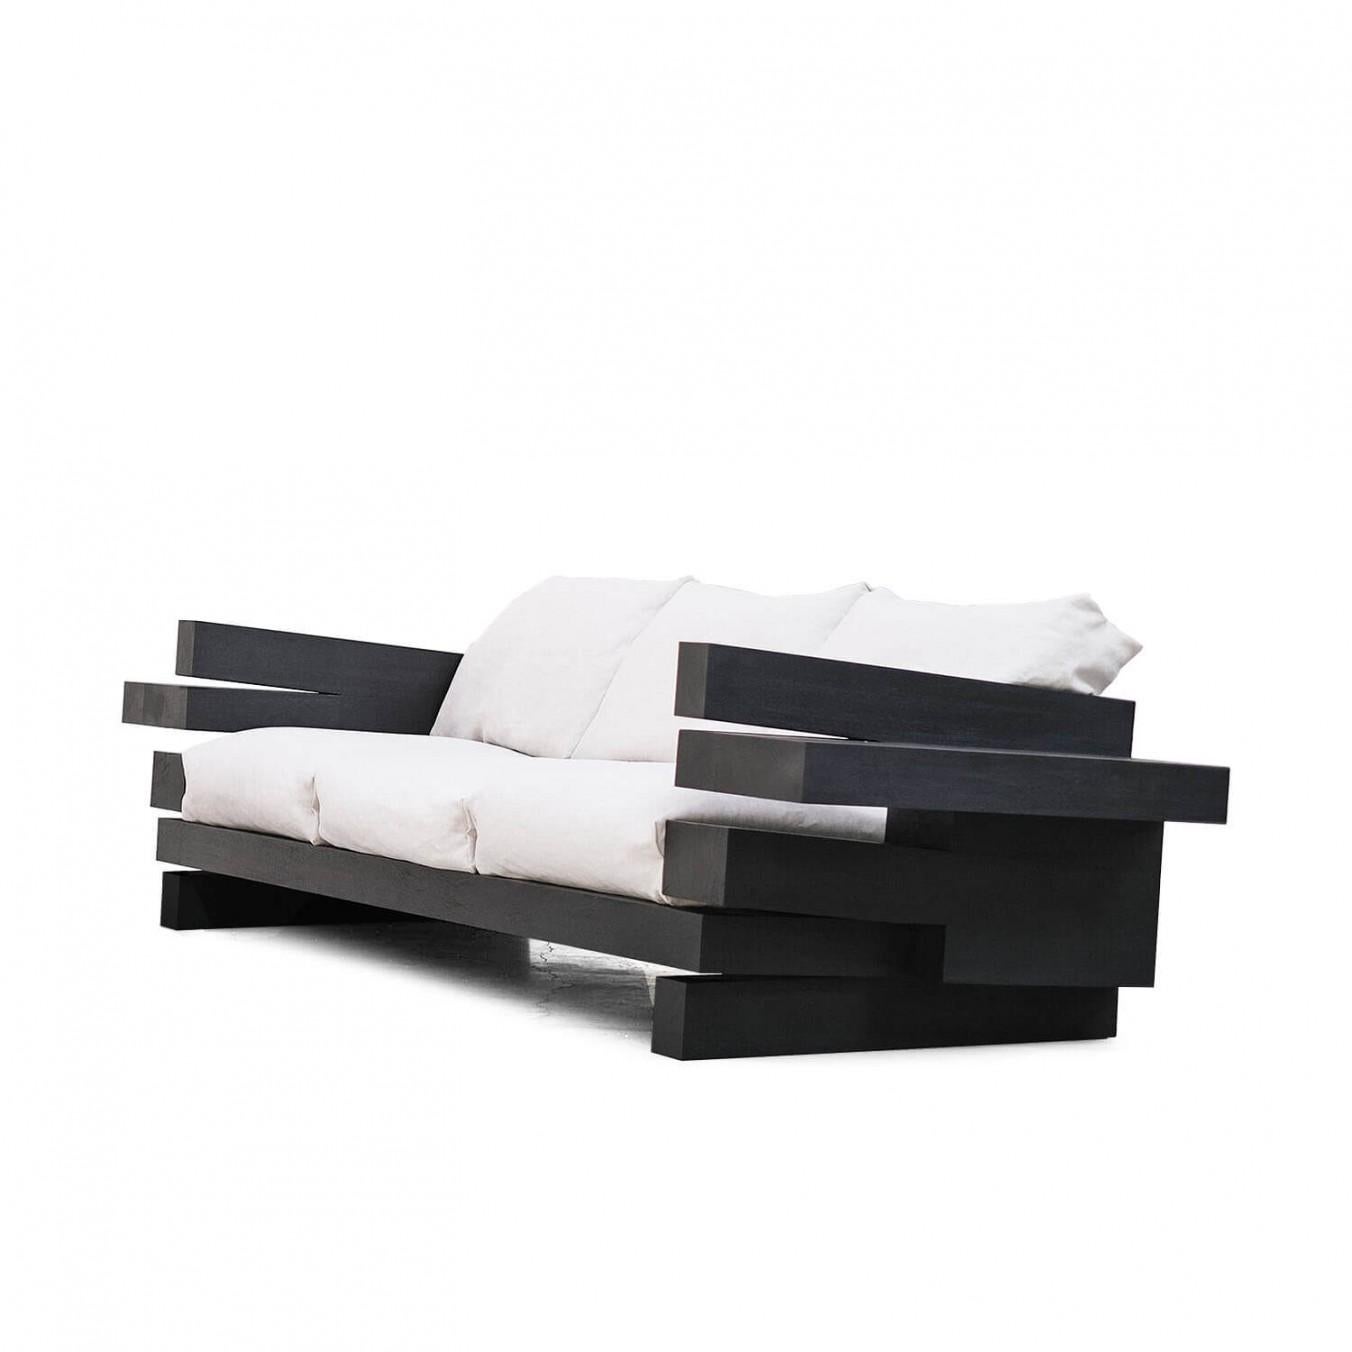 Zeitgenössisches Sofa aus Iroko-Holz - Sofa Zoumey von Arno Declercq

Abmessungen: T 87 x B 290 x H 70 cm
Material: Gebranntes und gewachstes Iroko-Holz und Leinen.

Natürliche Walnuss mit anderen Farben von Leinen ist möglich, kontaktieren Sie